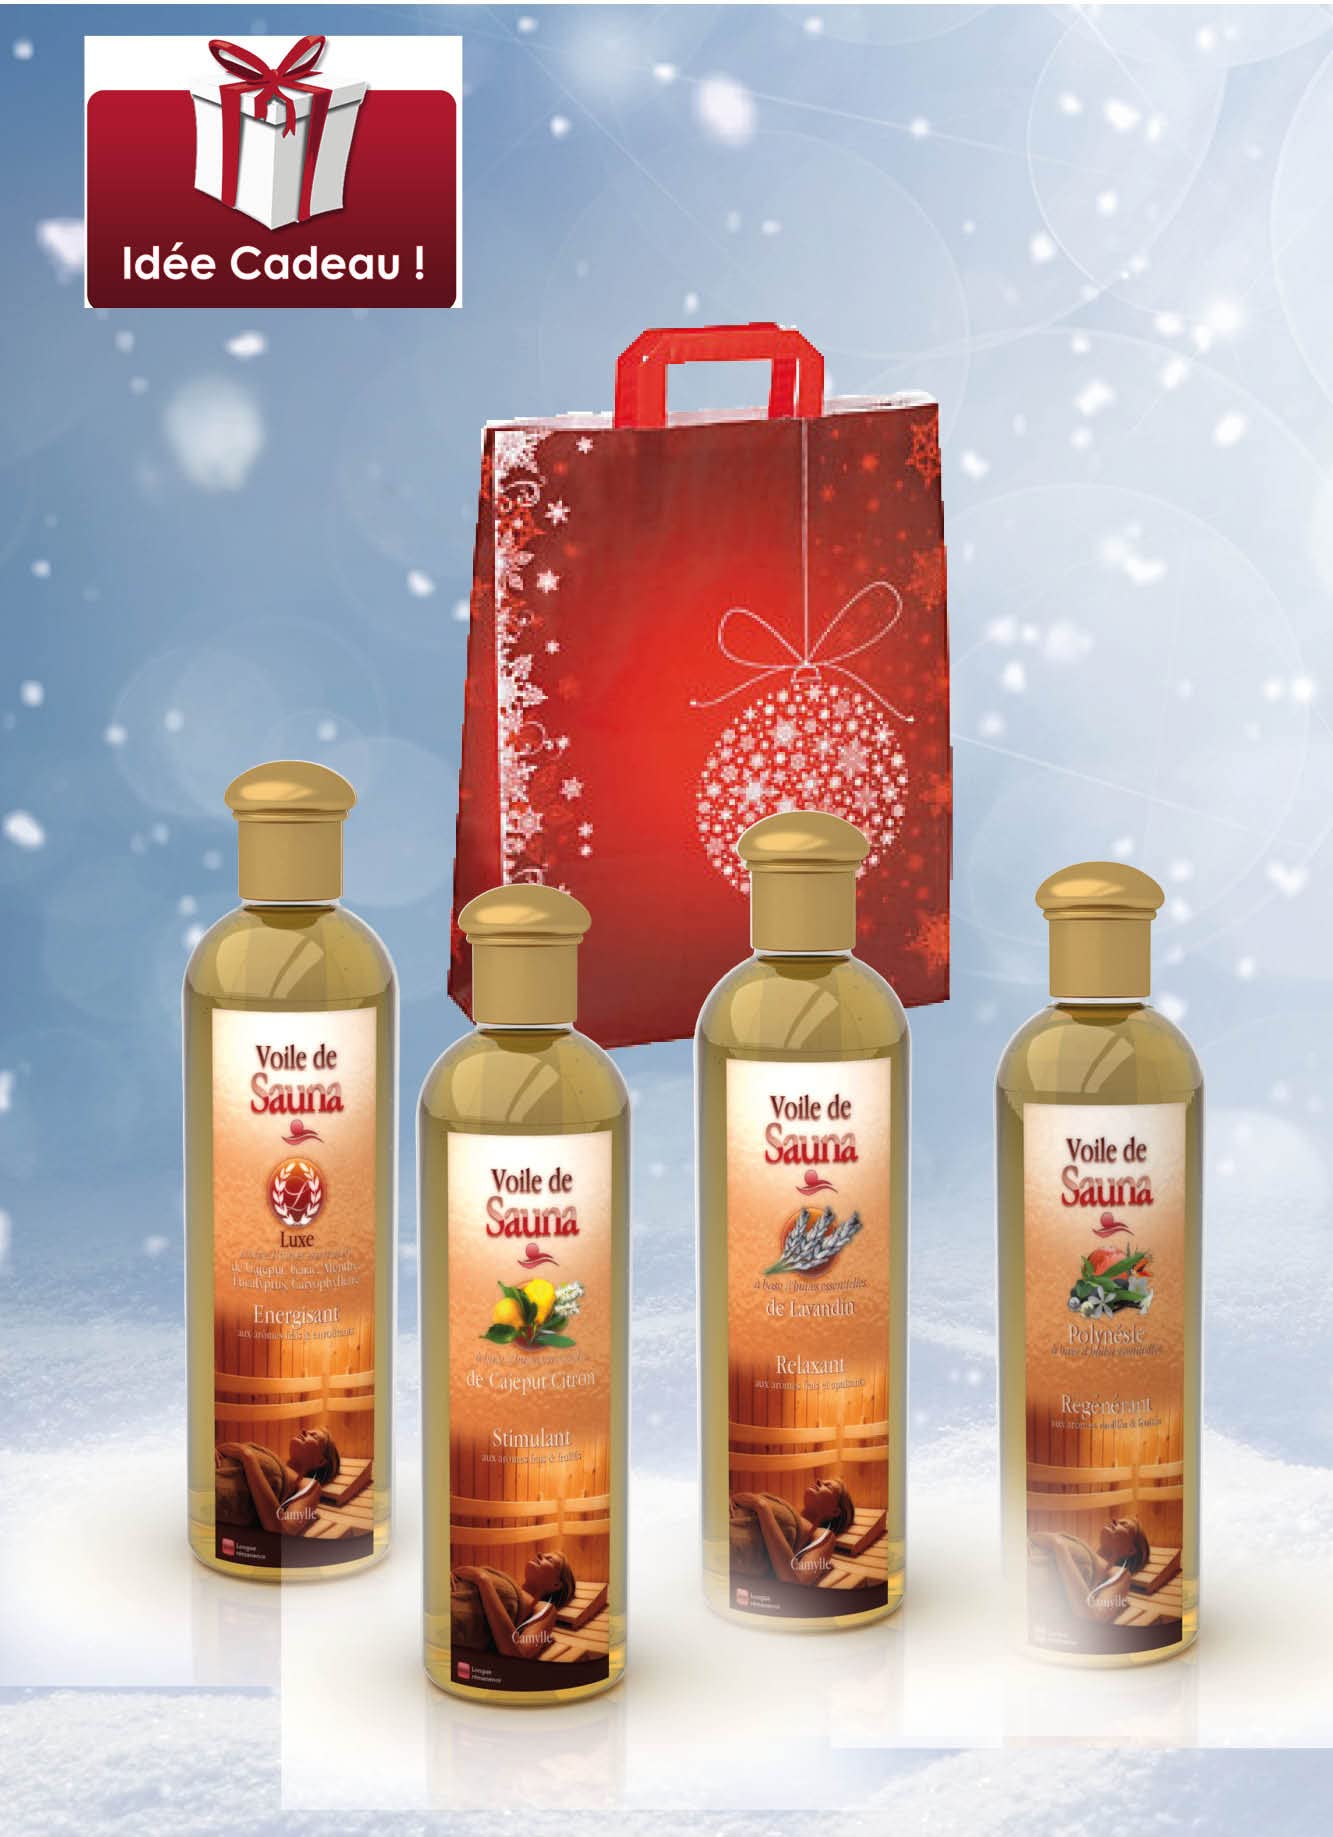 Camylle - Sauna-Aufguss-Auswahl mit einer schönen Baumwolltasche als Geschenk mit vier Flaschen: 1 x 250ml Luxe - 1 x 250ml Kajeput Zitrone - 1 x 250ml Lavendel - 1 x 250ml Polynesie